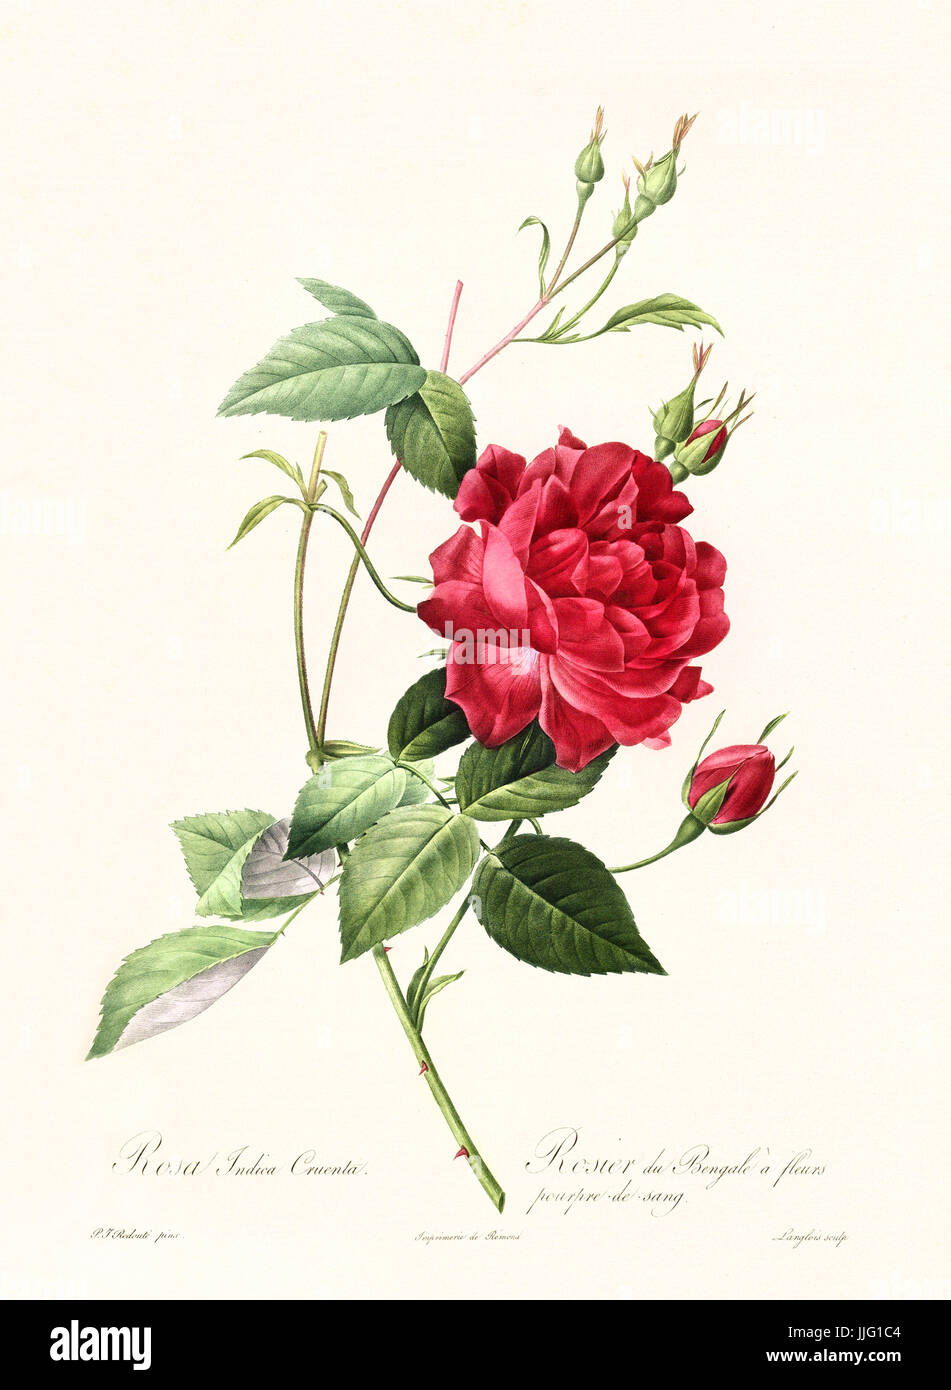 Vecchia illustrazione di rosa indica cuenta. Creato da P. R. Redoute, pubblicato su Les Roses, Imp. Firmin Didot, Parigi, 1817-24 Foto Stock